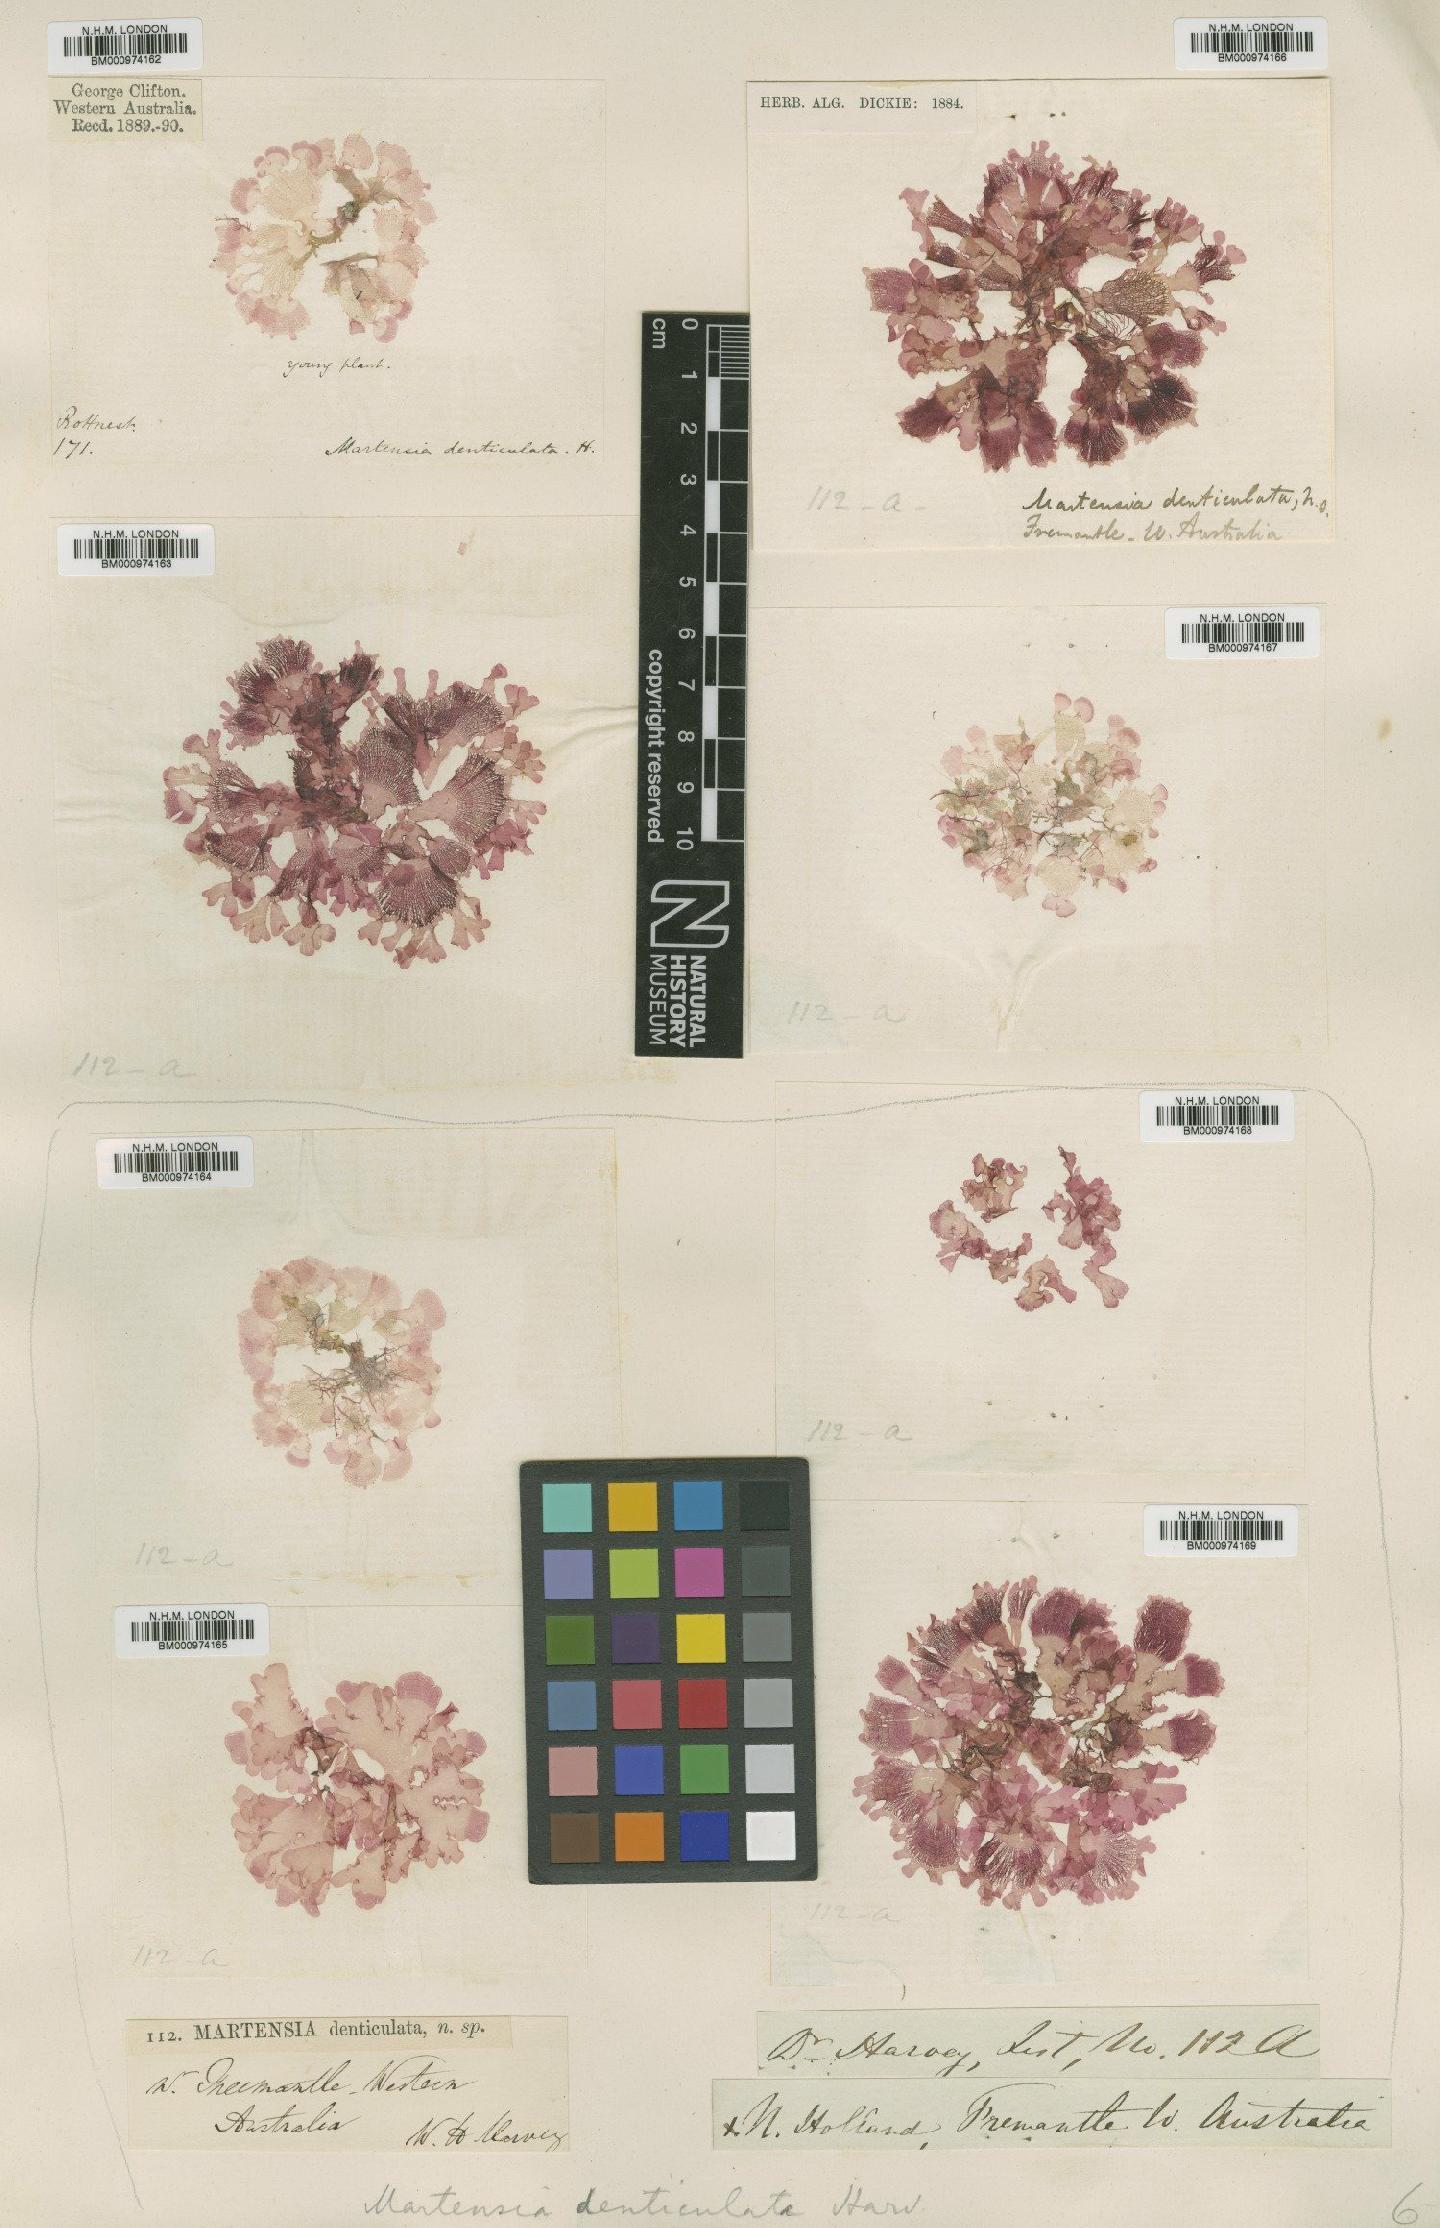 To NHMUK collection (Martensia denticulata Harv.; TYPE; NHMUK:ecatalogue:724157)